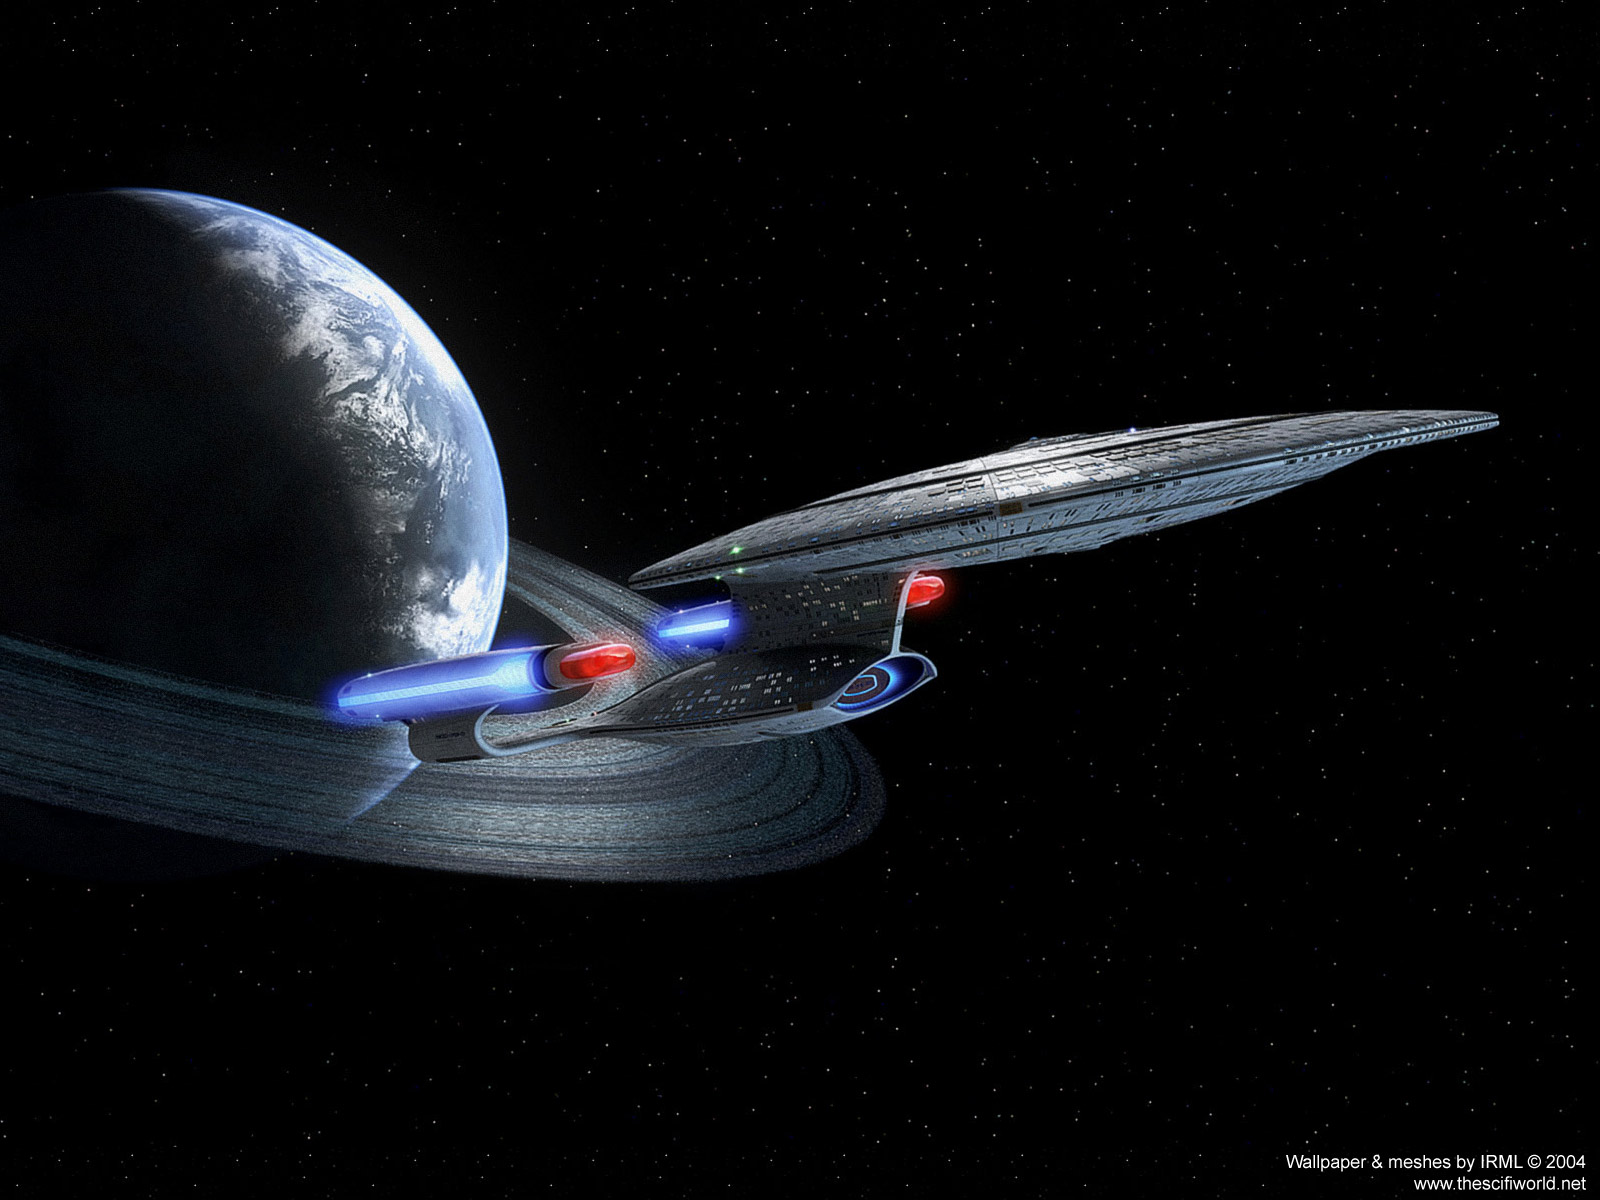 Star Trek Live Wallpaper - Uss Enterprise Star Trek Wallpaper 4k - HD Wallpaper 